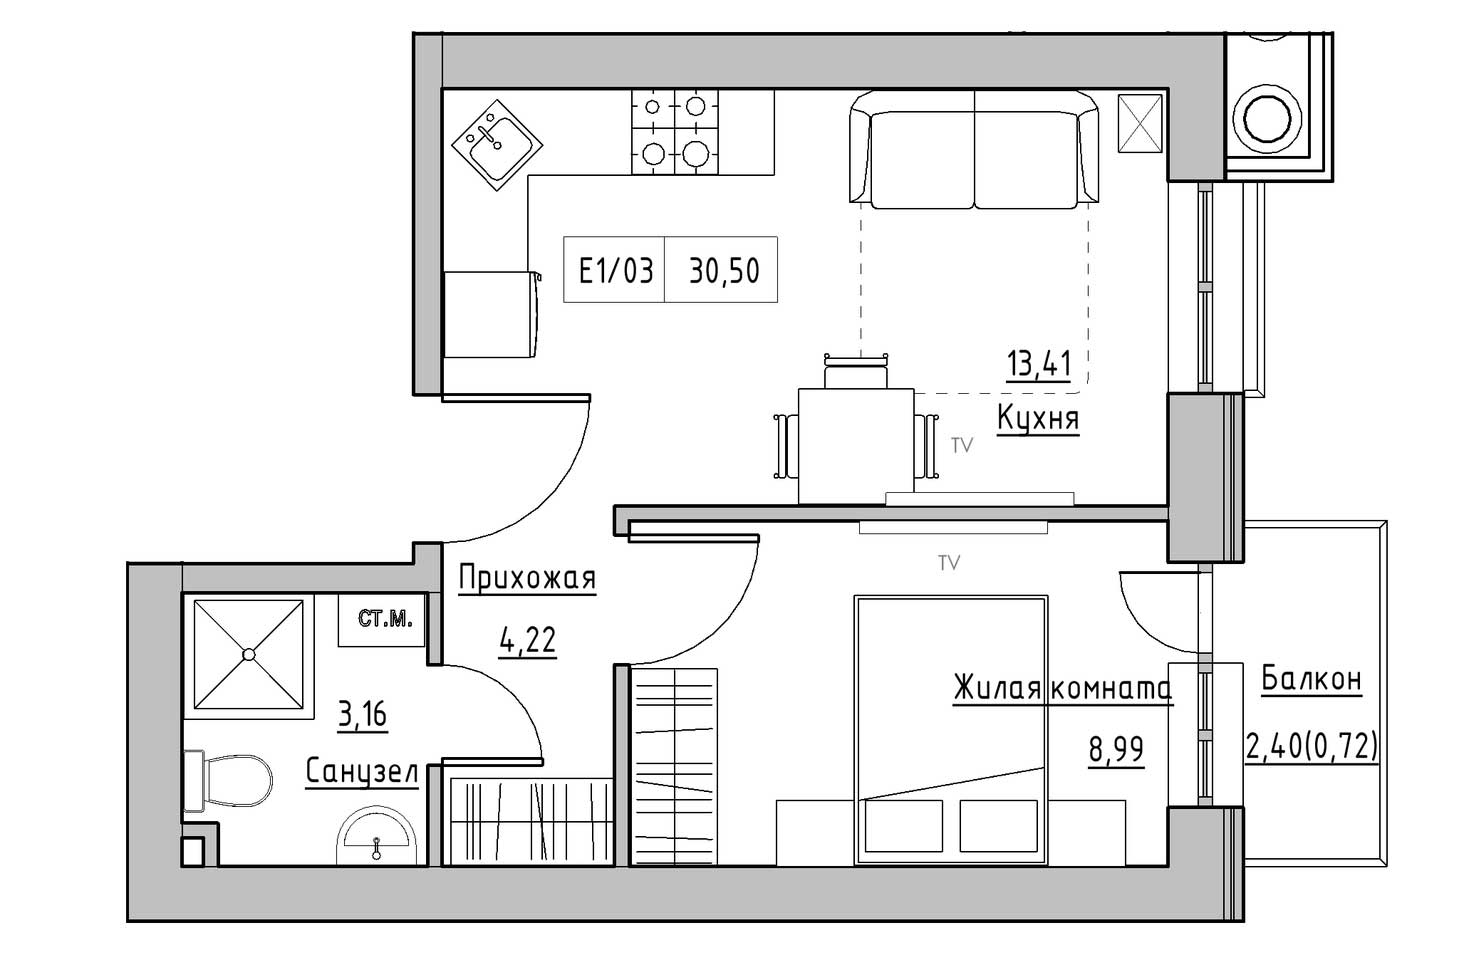 Планировка 1-к квартира площей 30.5м2, KS-009-05/0002.